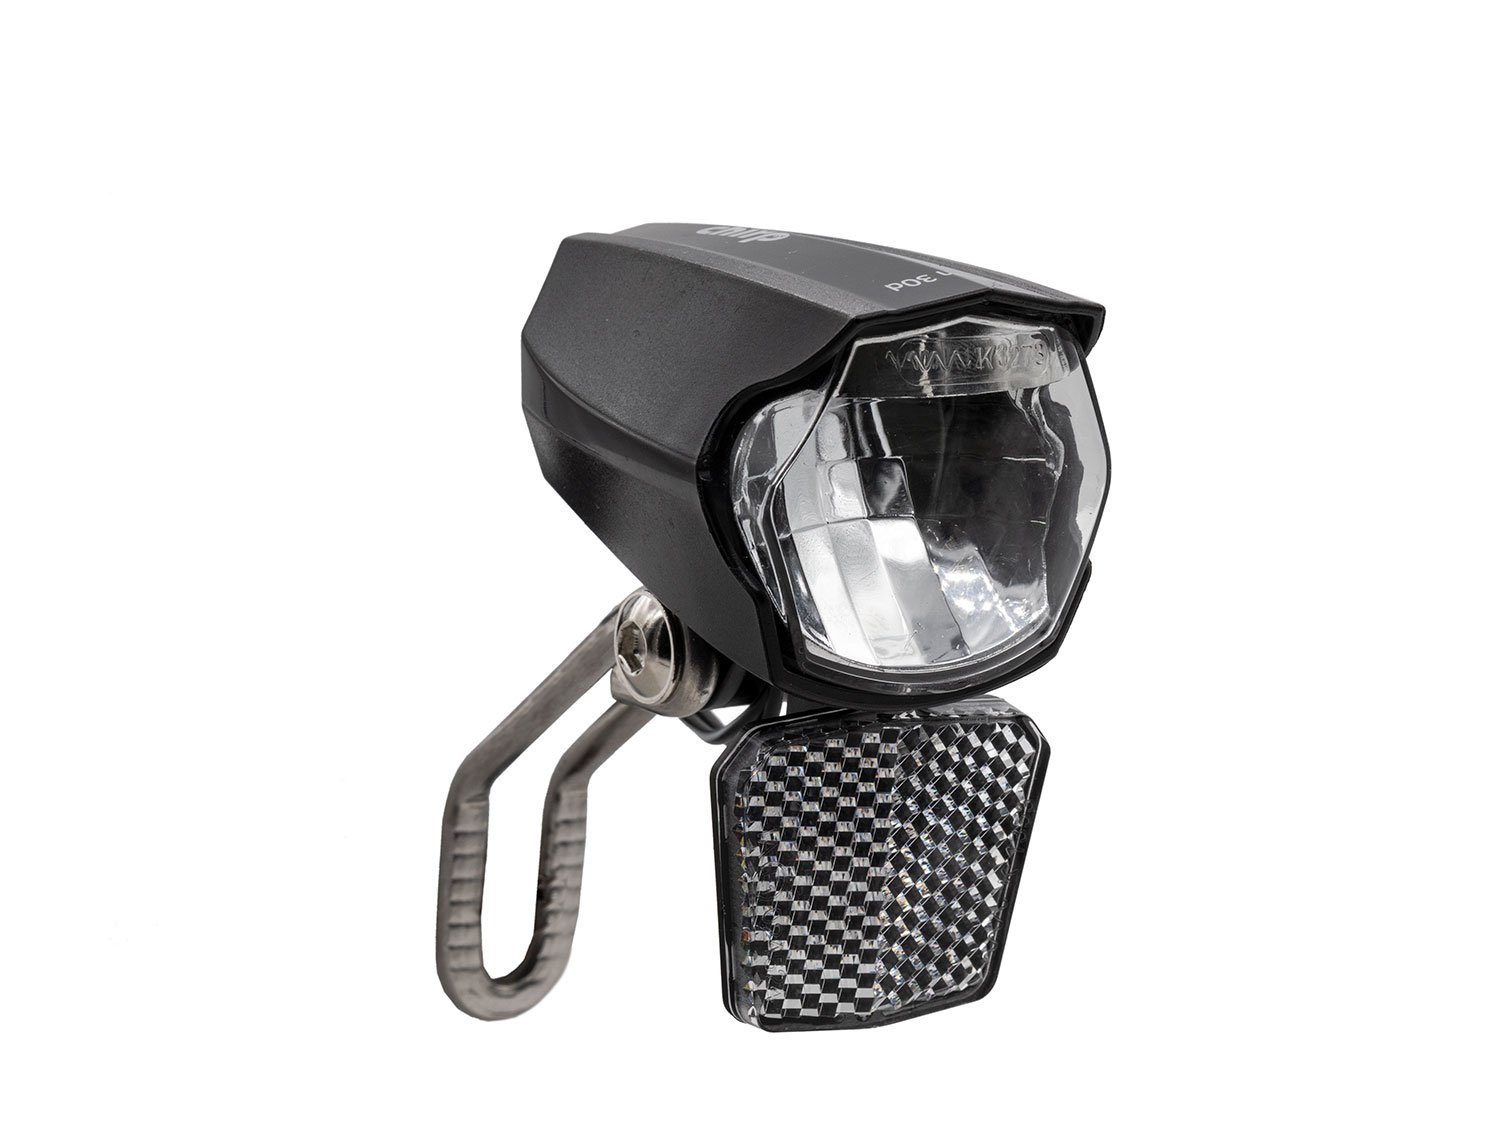 Chirp Fahrrad-Frontlicht Beam Frontscheinwerfer 30 Lux, Dynamo